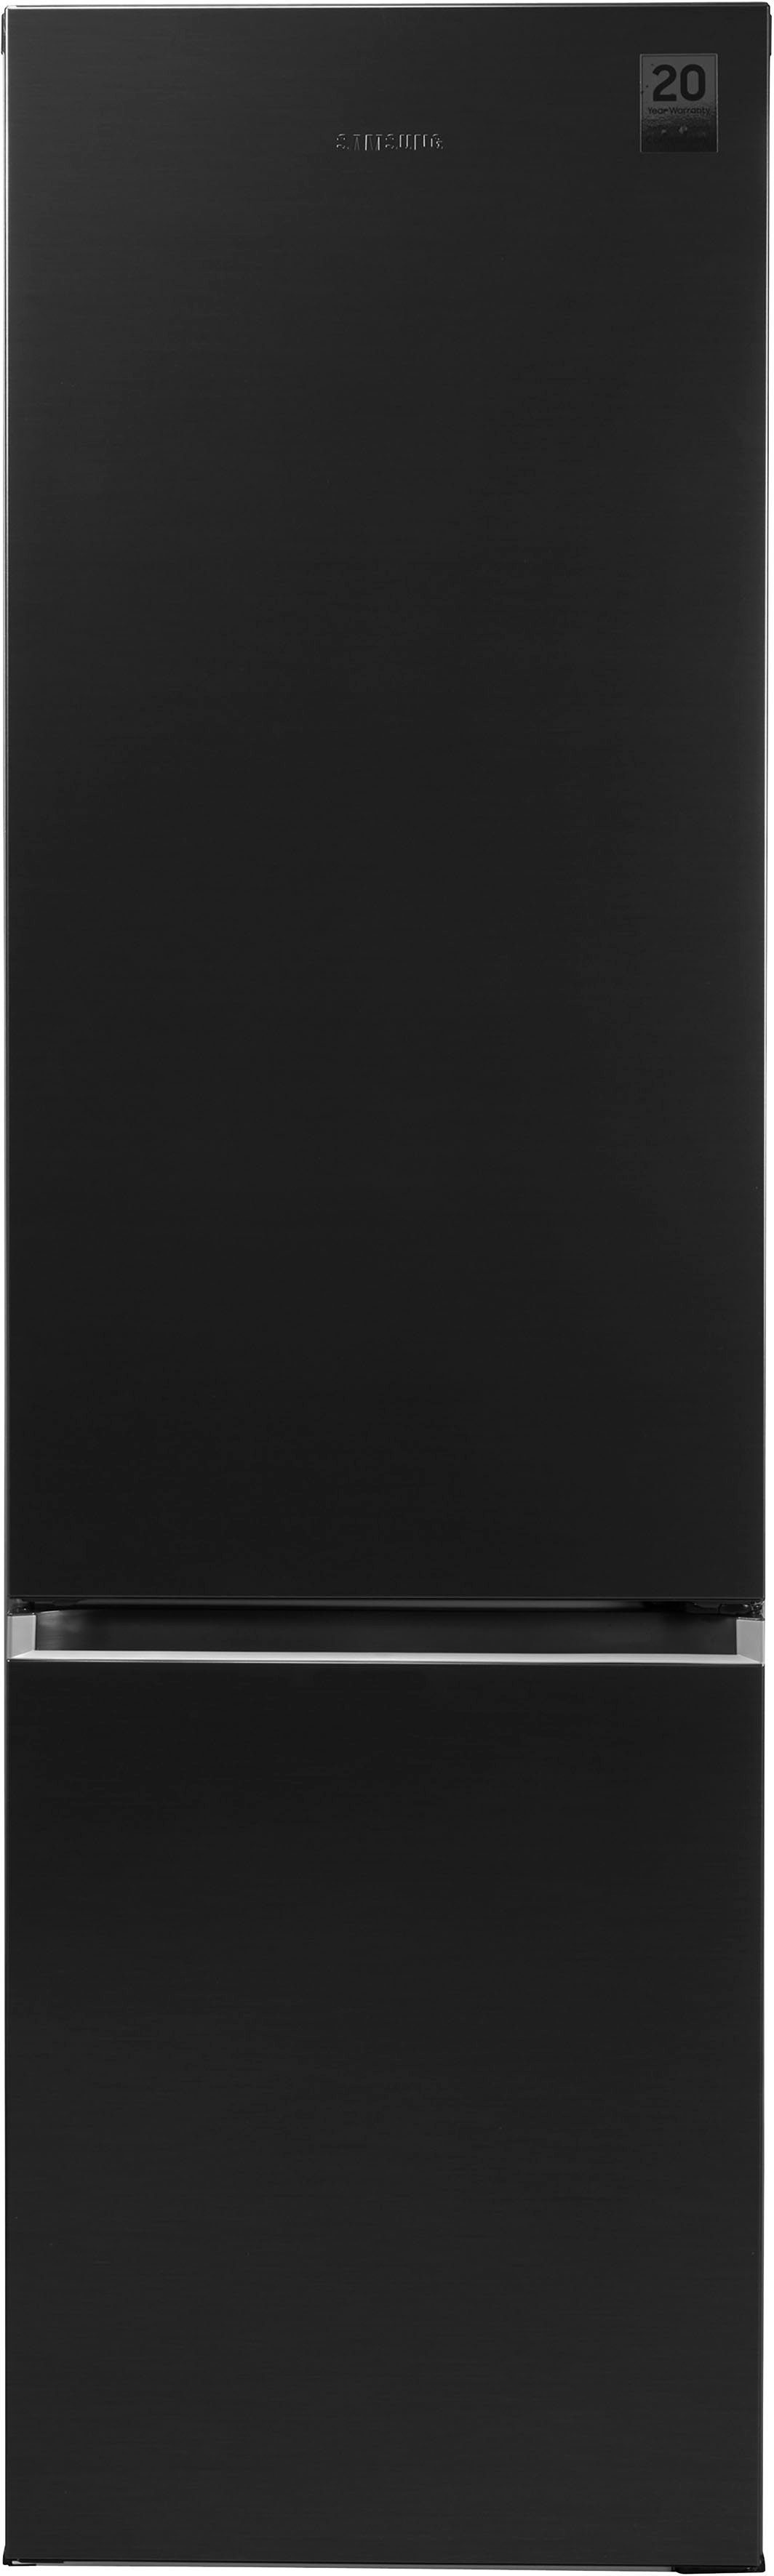 Samsung Kühl-/Gefrierkombination RL38T607BB1, 203 cm inklusive 59,5 4 cm breit, Garantie schwarz hoch, Jahre